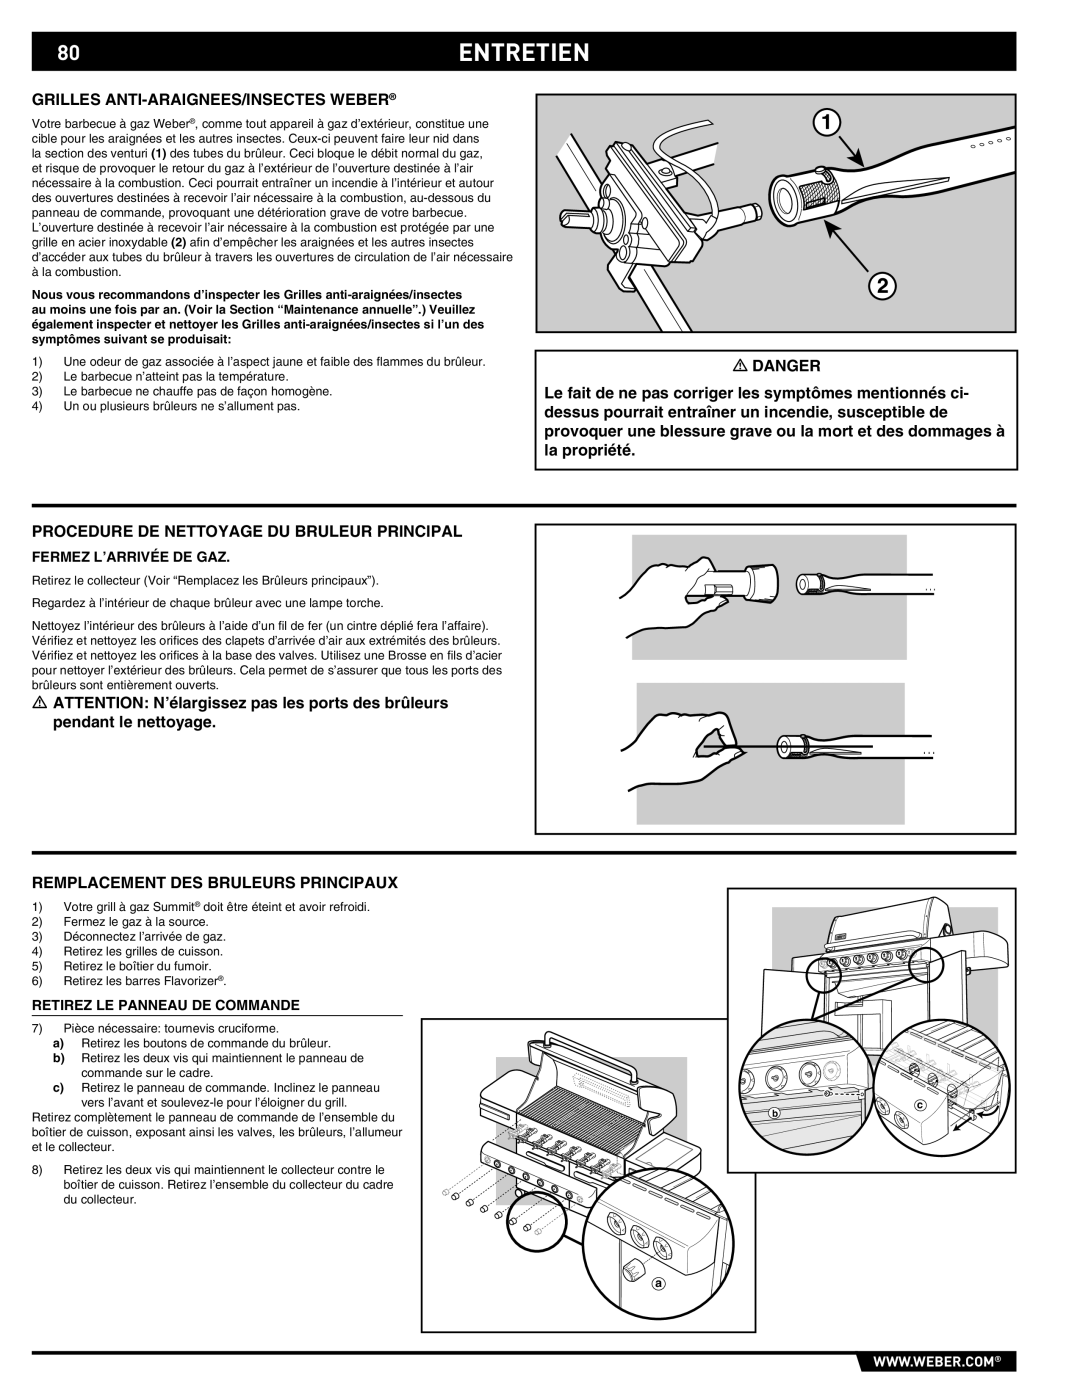 Summit E/S-620/650 manual 80ENTRETIEN, Grilles ANTI-ARAIGNEES/INSECTES Weber, Procedure DE Nettoyage DU Bruleur Principal 